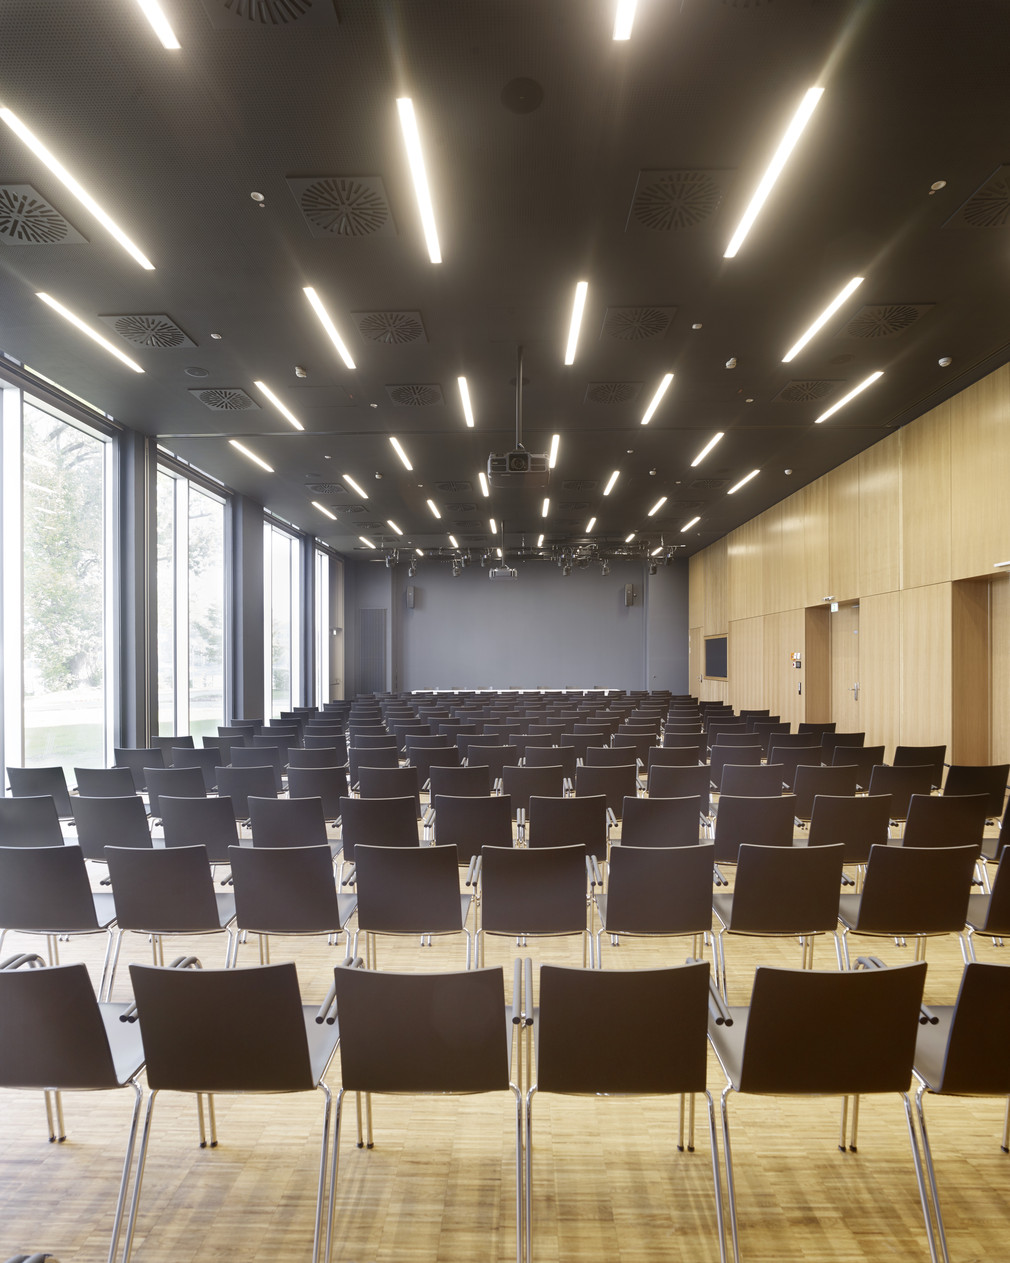 Das neue Seminargebäude der HTWG Konstanz. Bilder: wolframjanzerarchitekturbilder